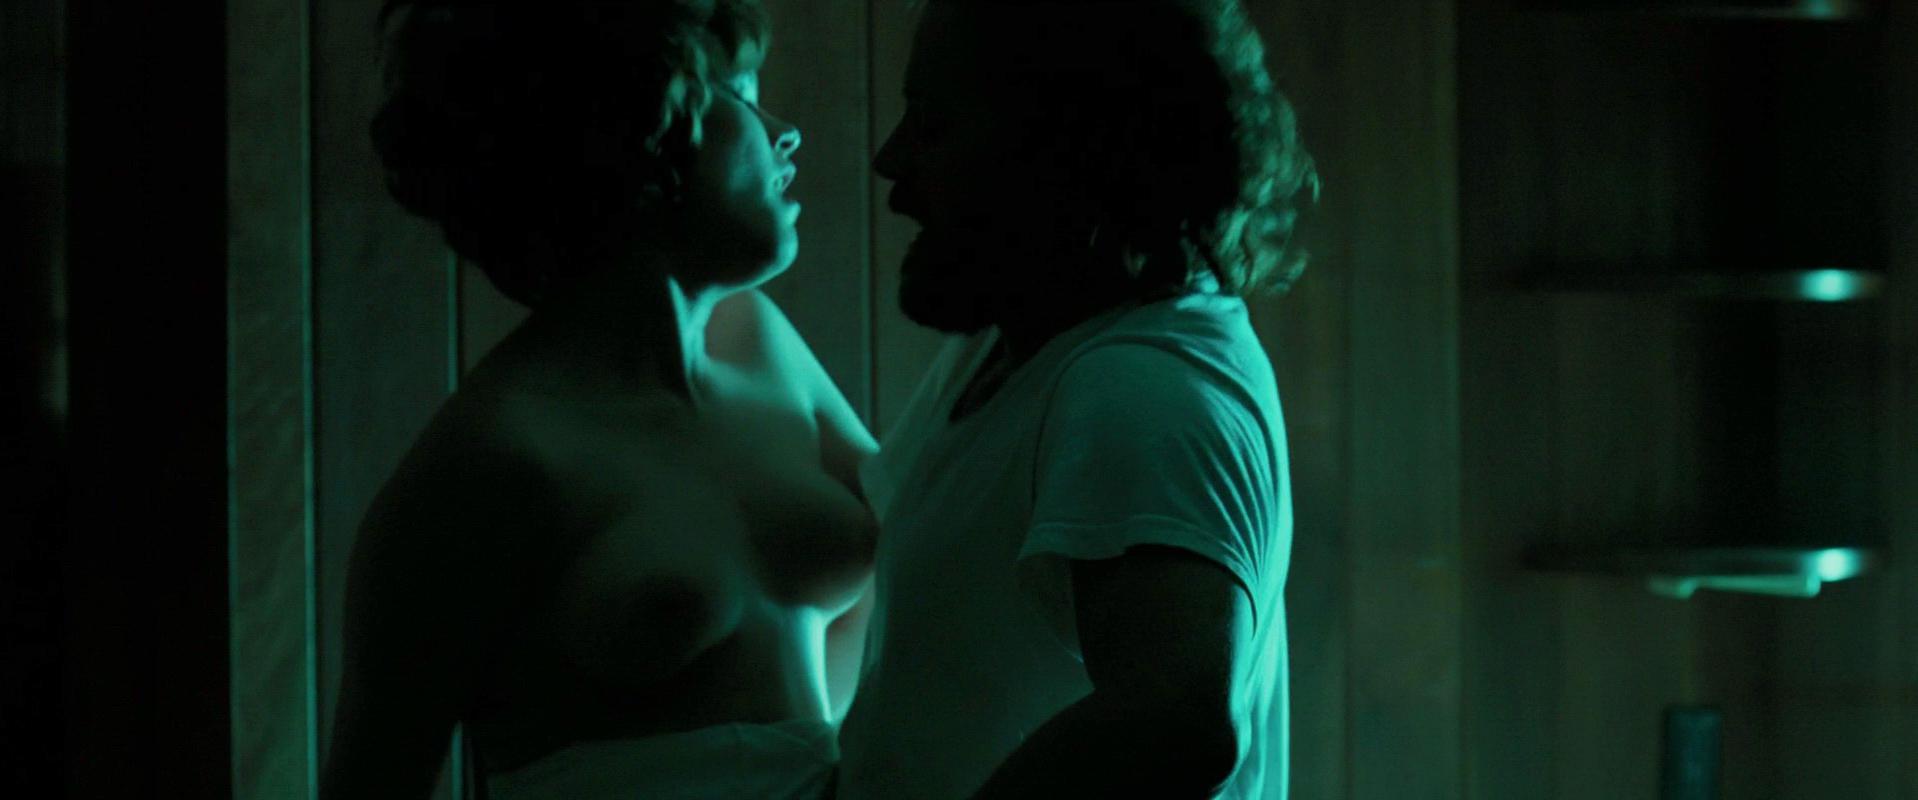 Nude Video Celebs Mena Suvari Nude The Mysteries Of Pittsburgh 2008 